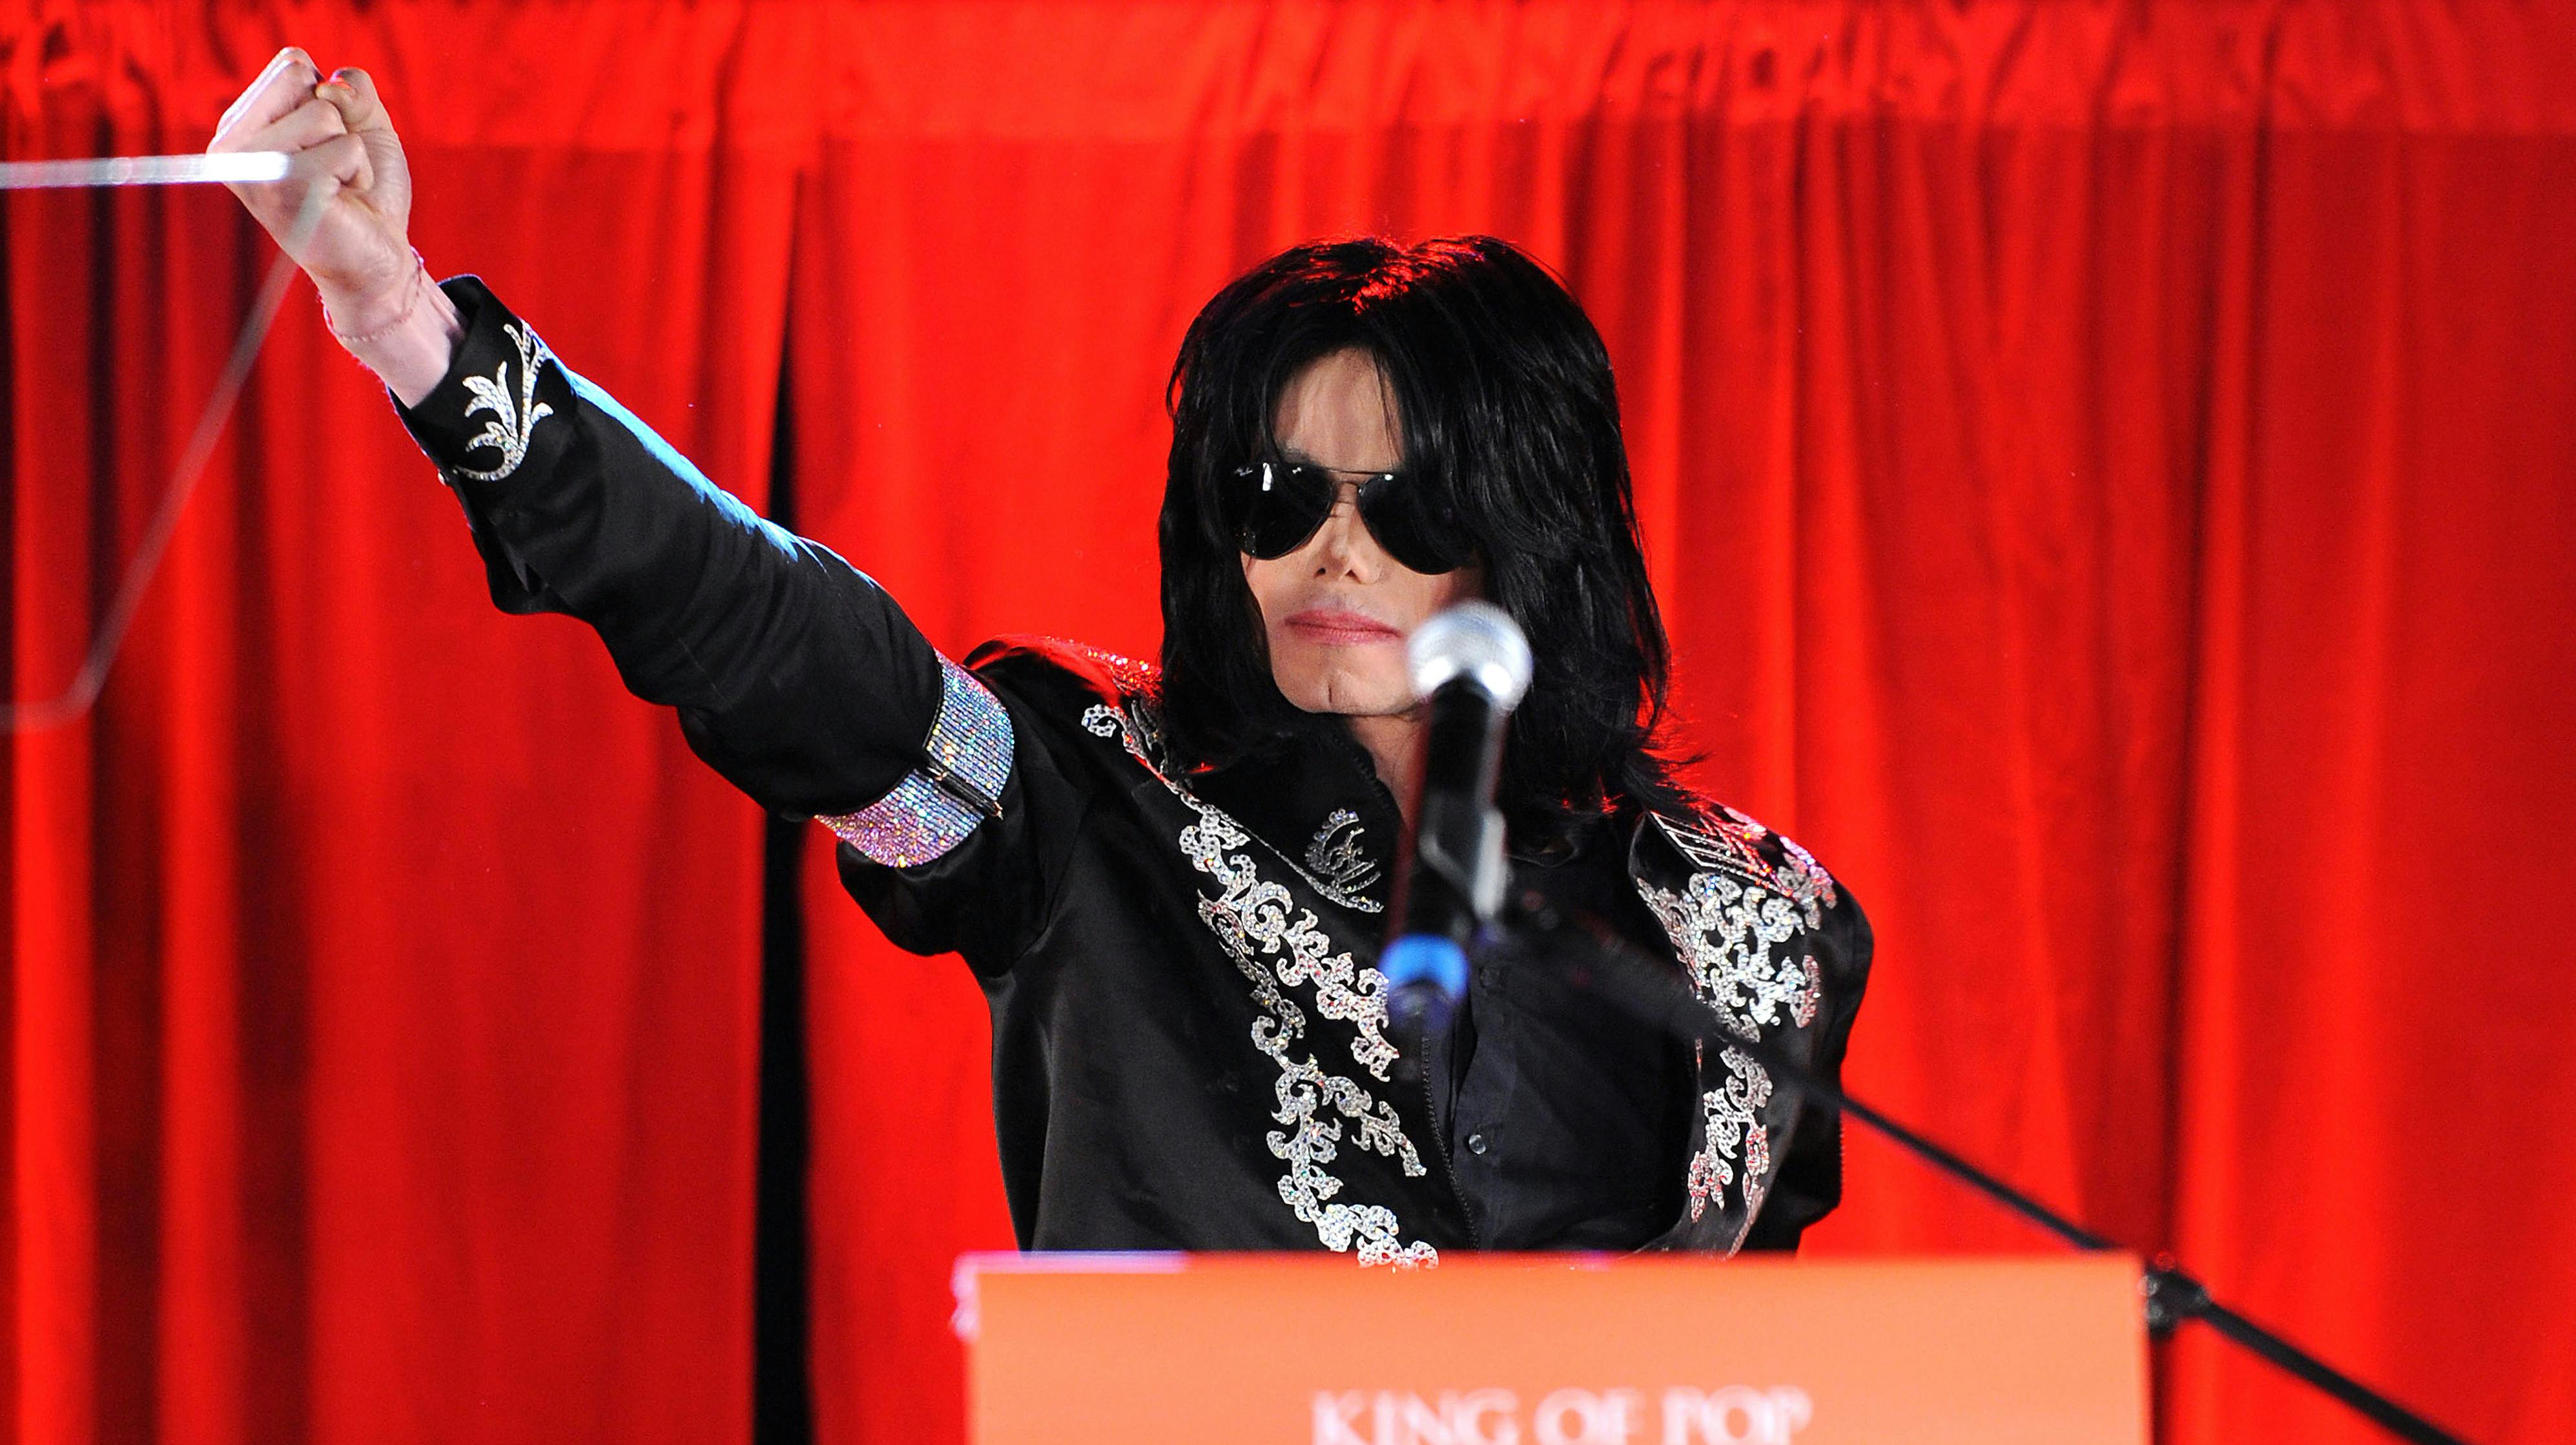 Der er blevet fjernet tre Michael Jackson-sange fra diverse musiktjenester.